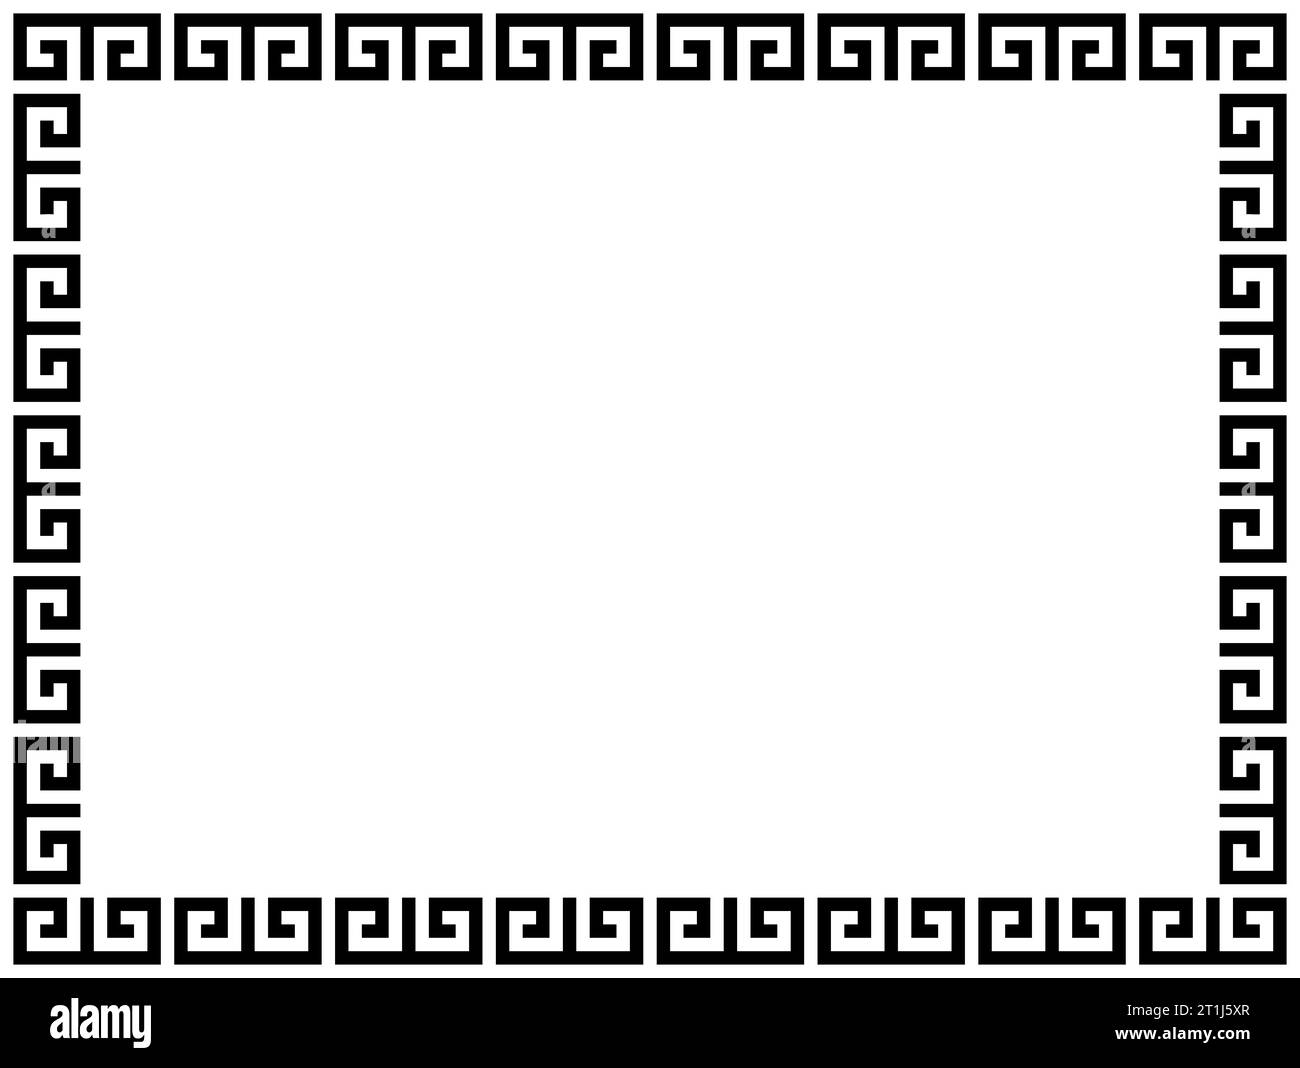 Griechische Rahmenornamente, Mäander. Quadratischer mäanderförmiger Rand aus einem wiederholten griechischen Motiv Vektor-Illustration auf weißem Hintergrund. Stockfoto